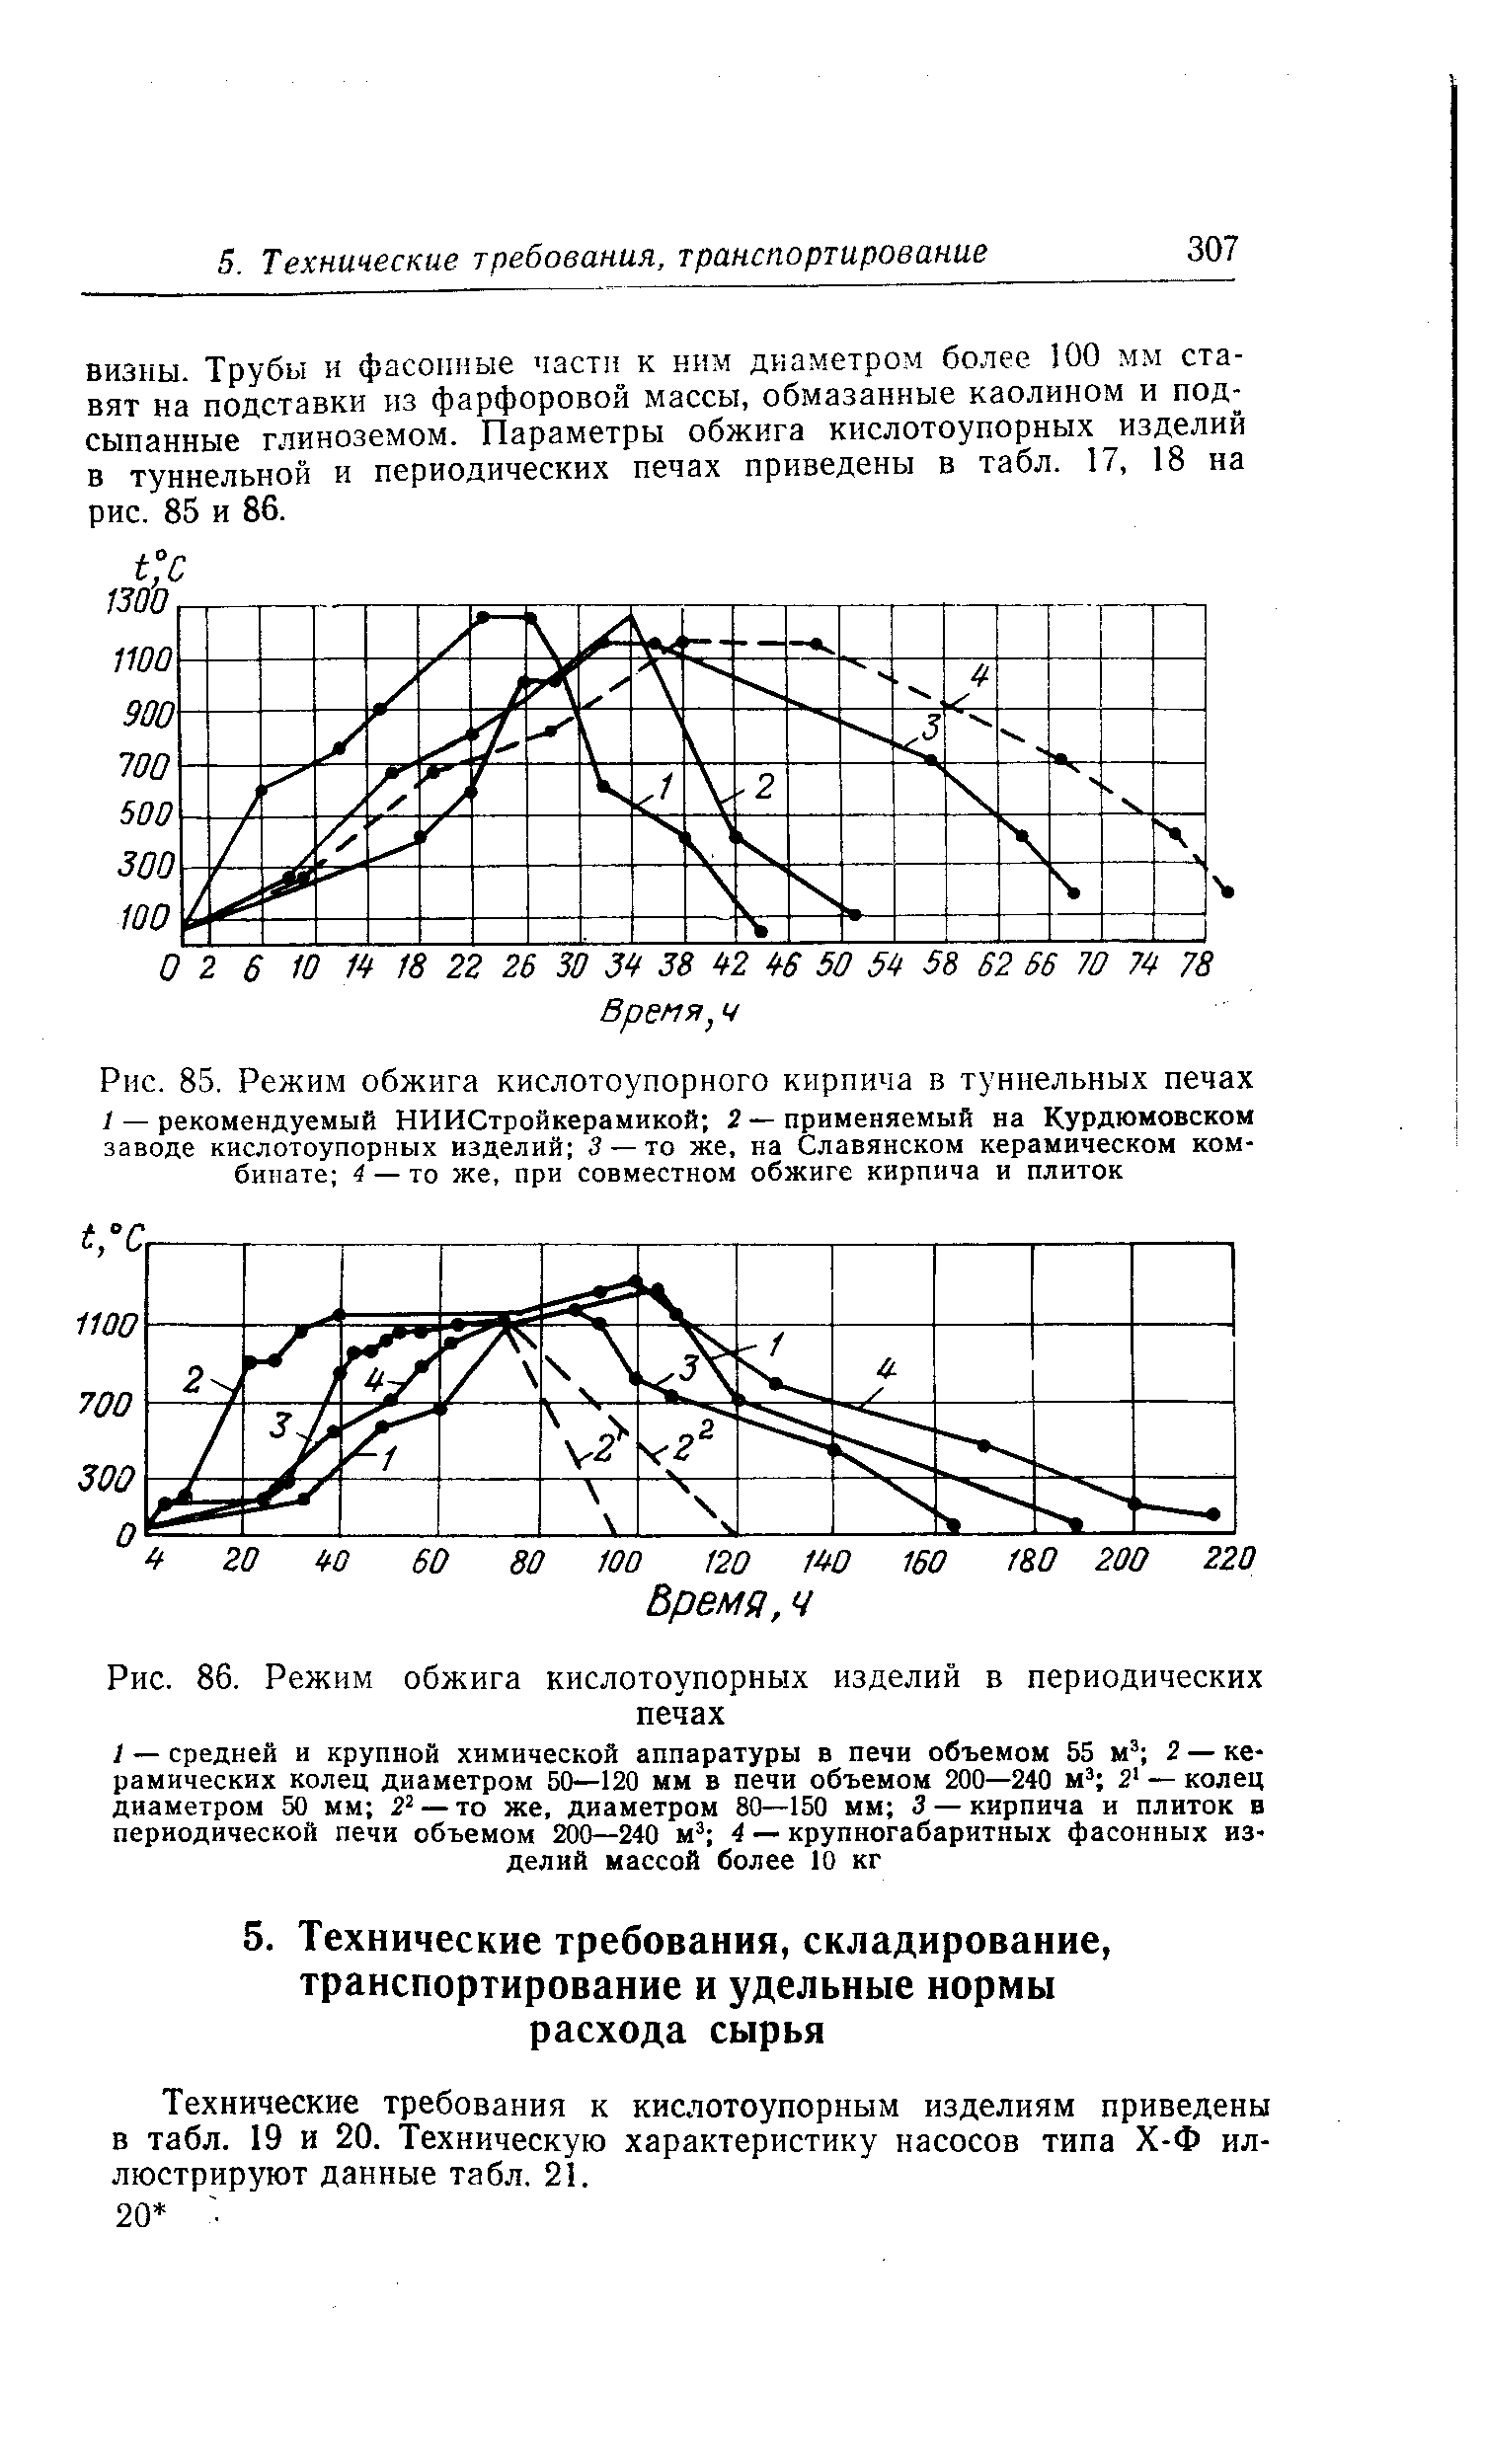 Технические требования к кислотоупорным изделиям приведены в табл. 19 и 20. Техническую характеристику насосов типа Х-Ф иллюстрируют данные табл. 21.
